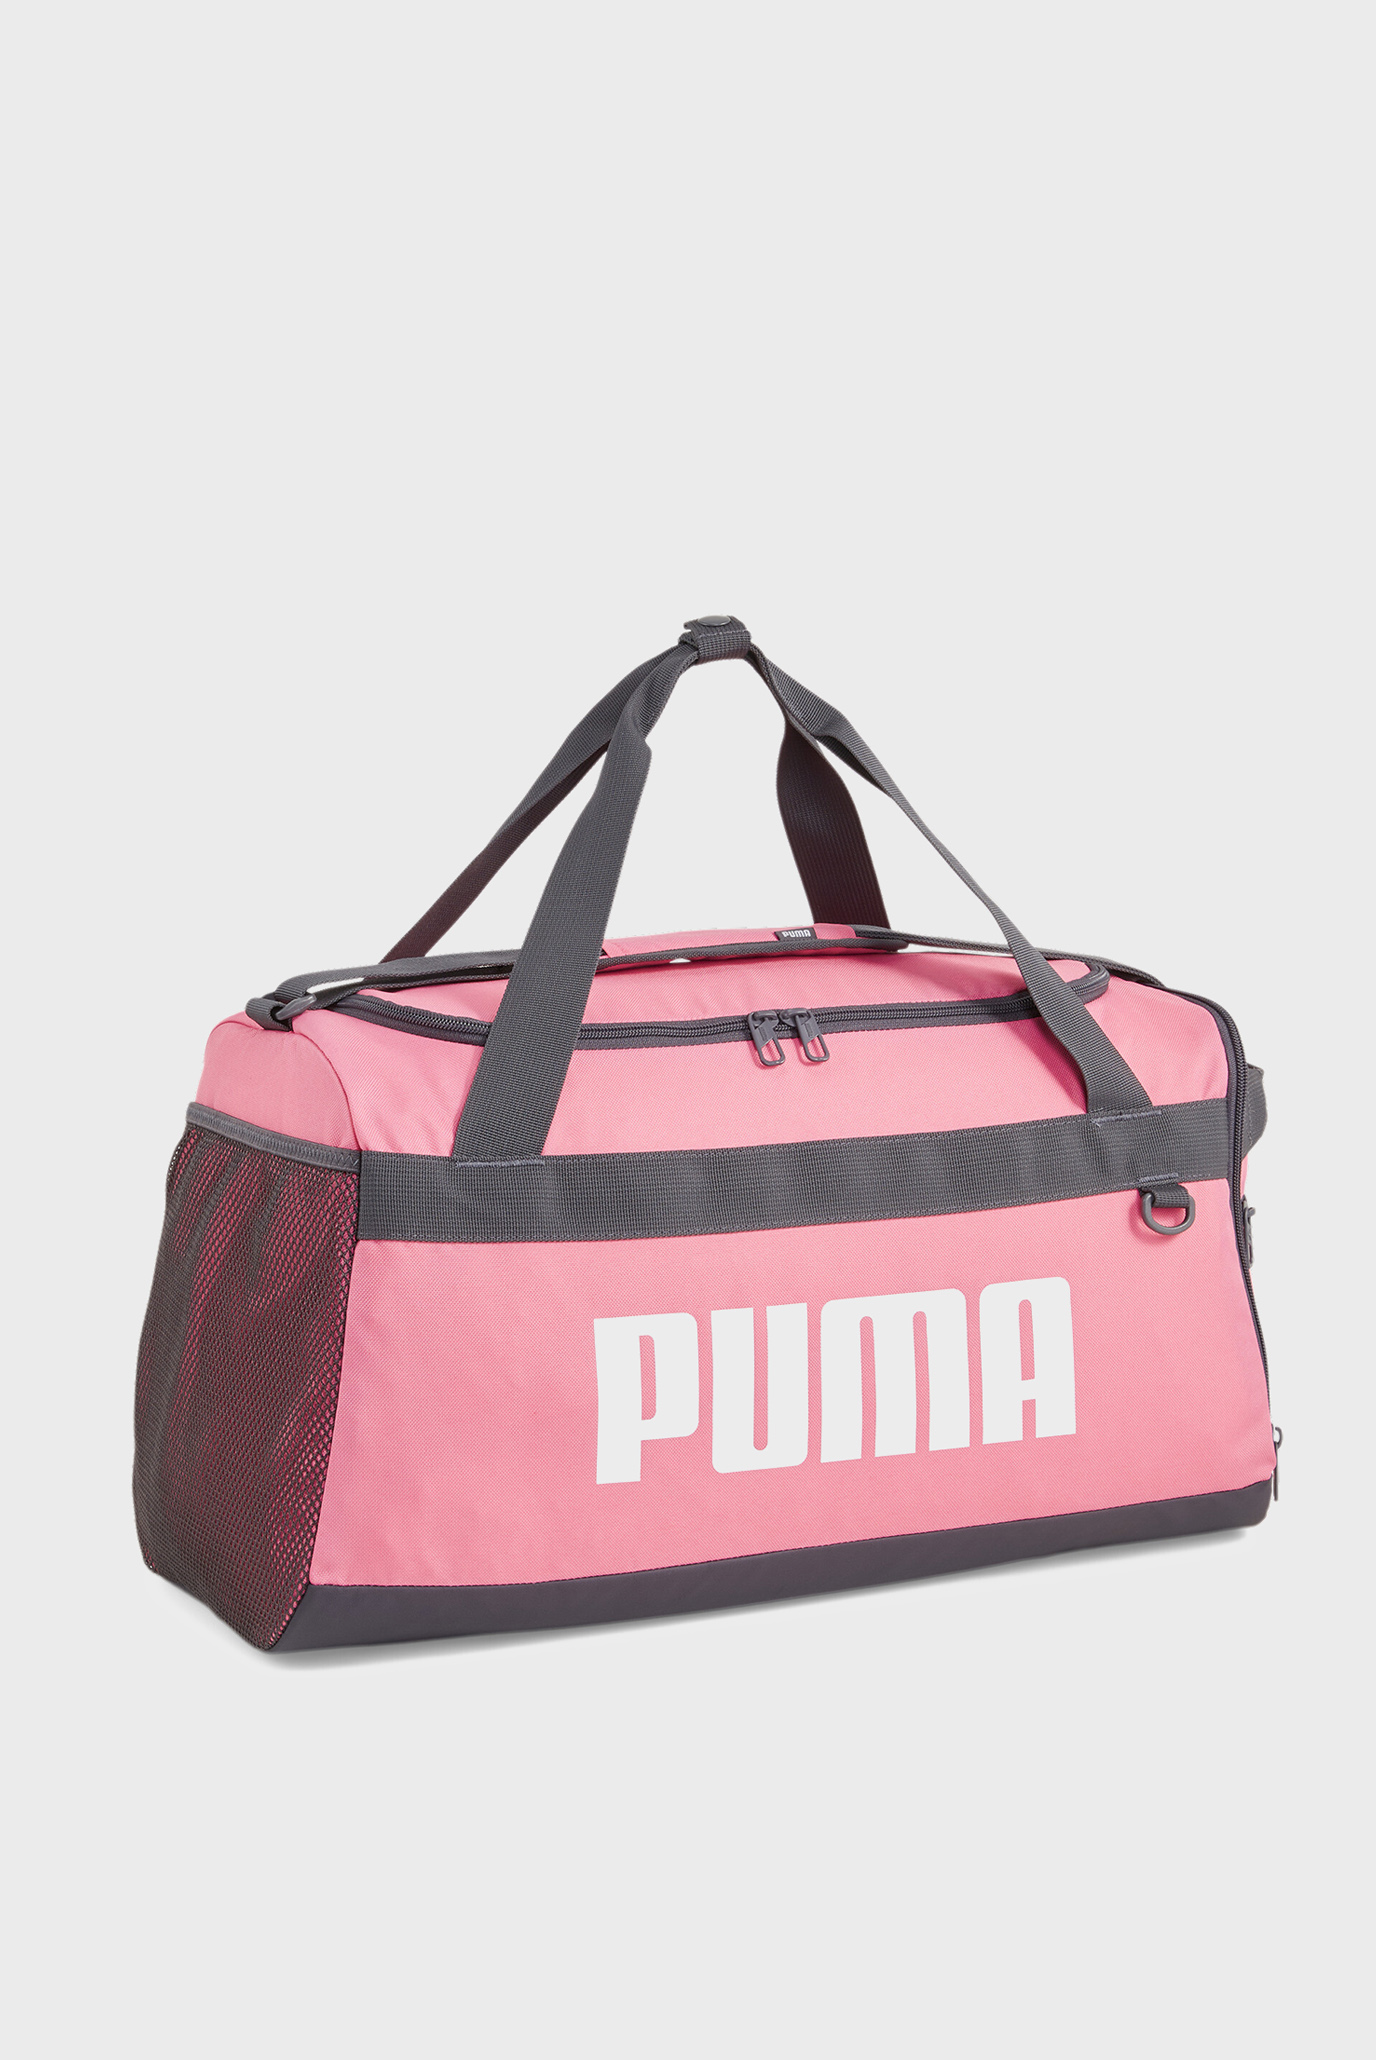 Розовая спортивная сумка Challenger S Duffle Bag 1